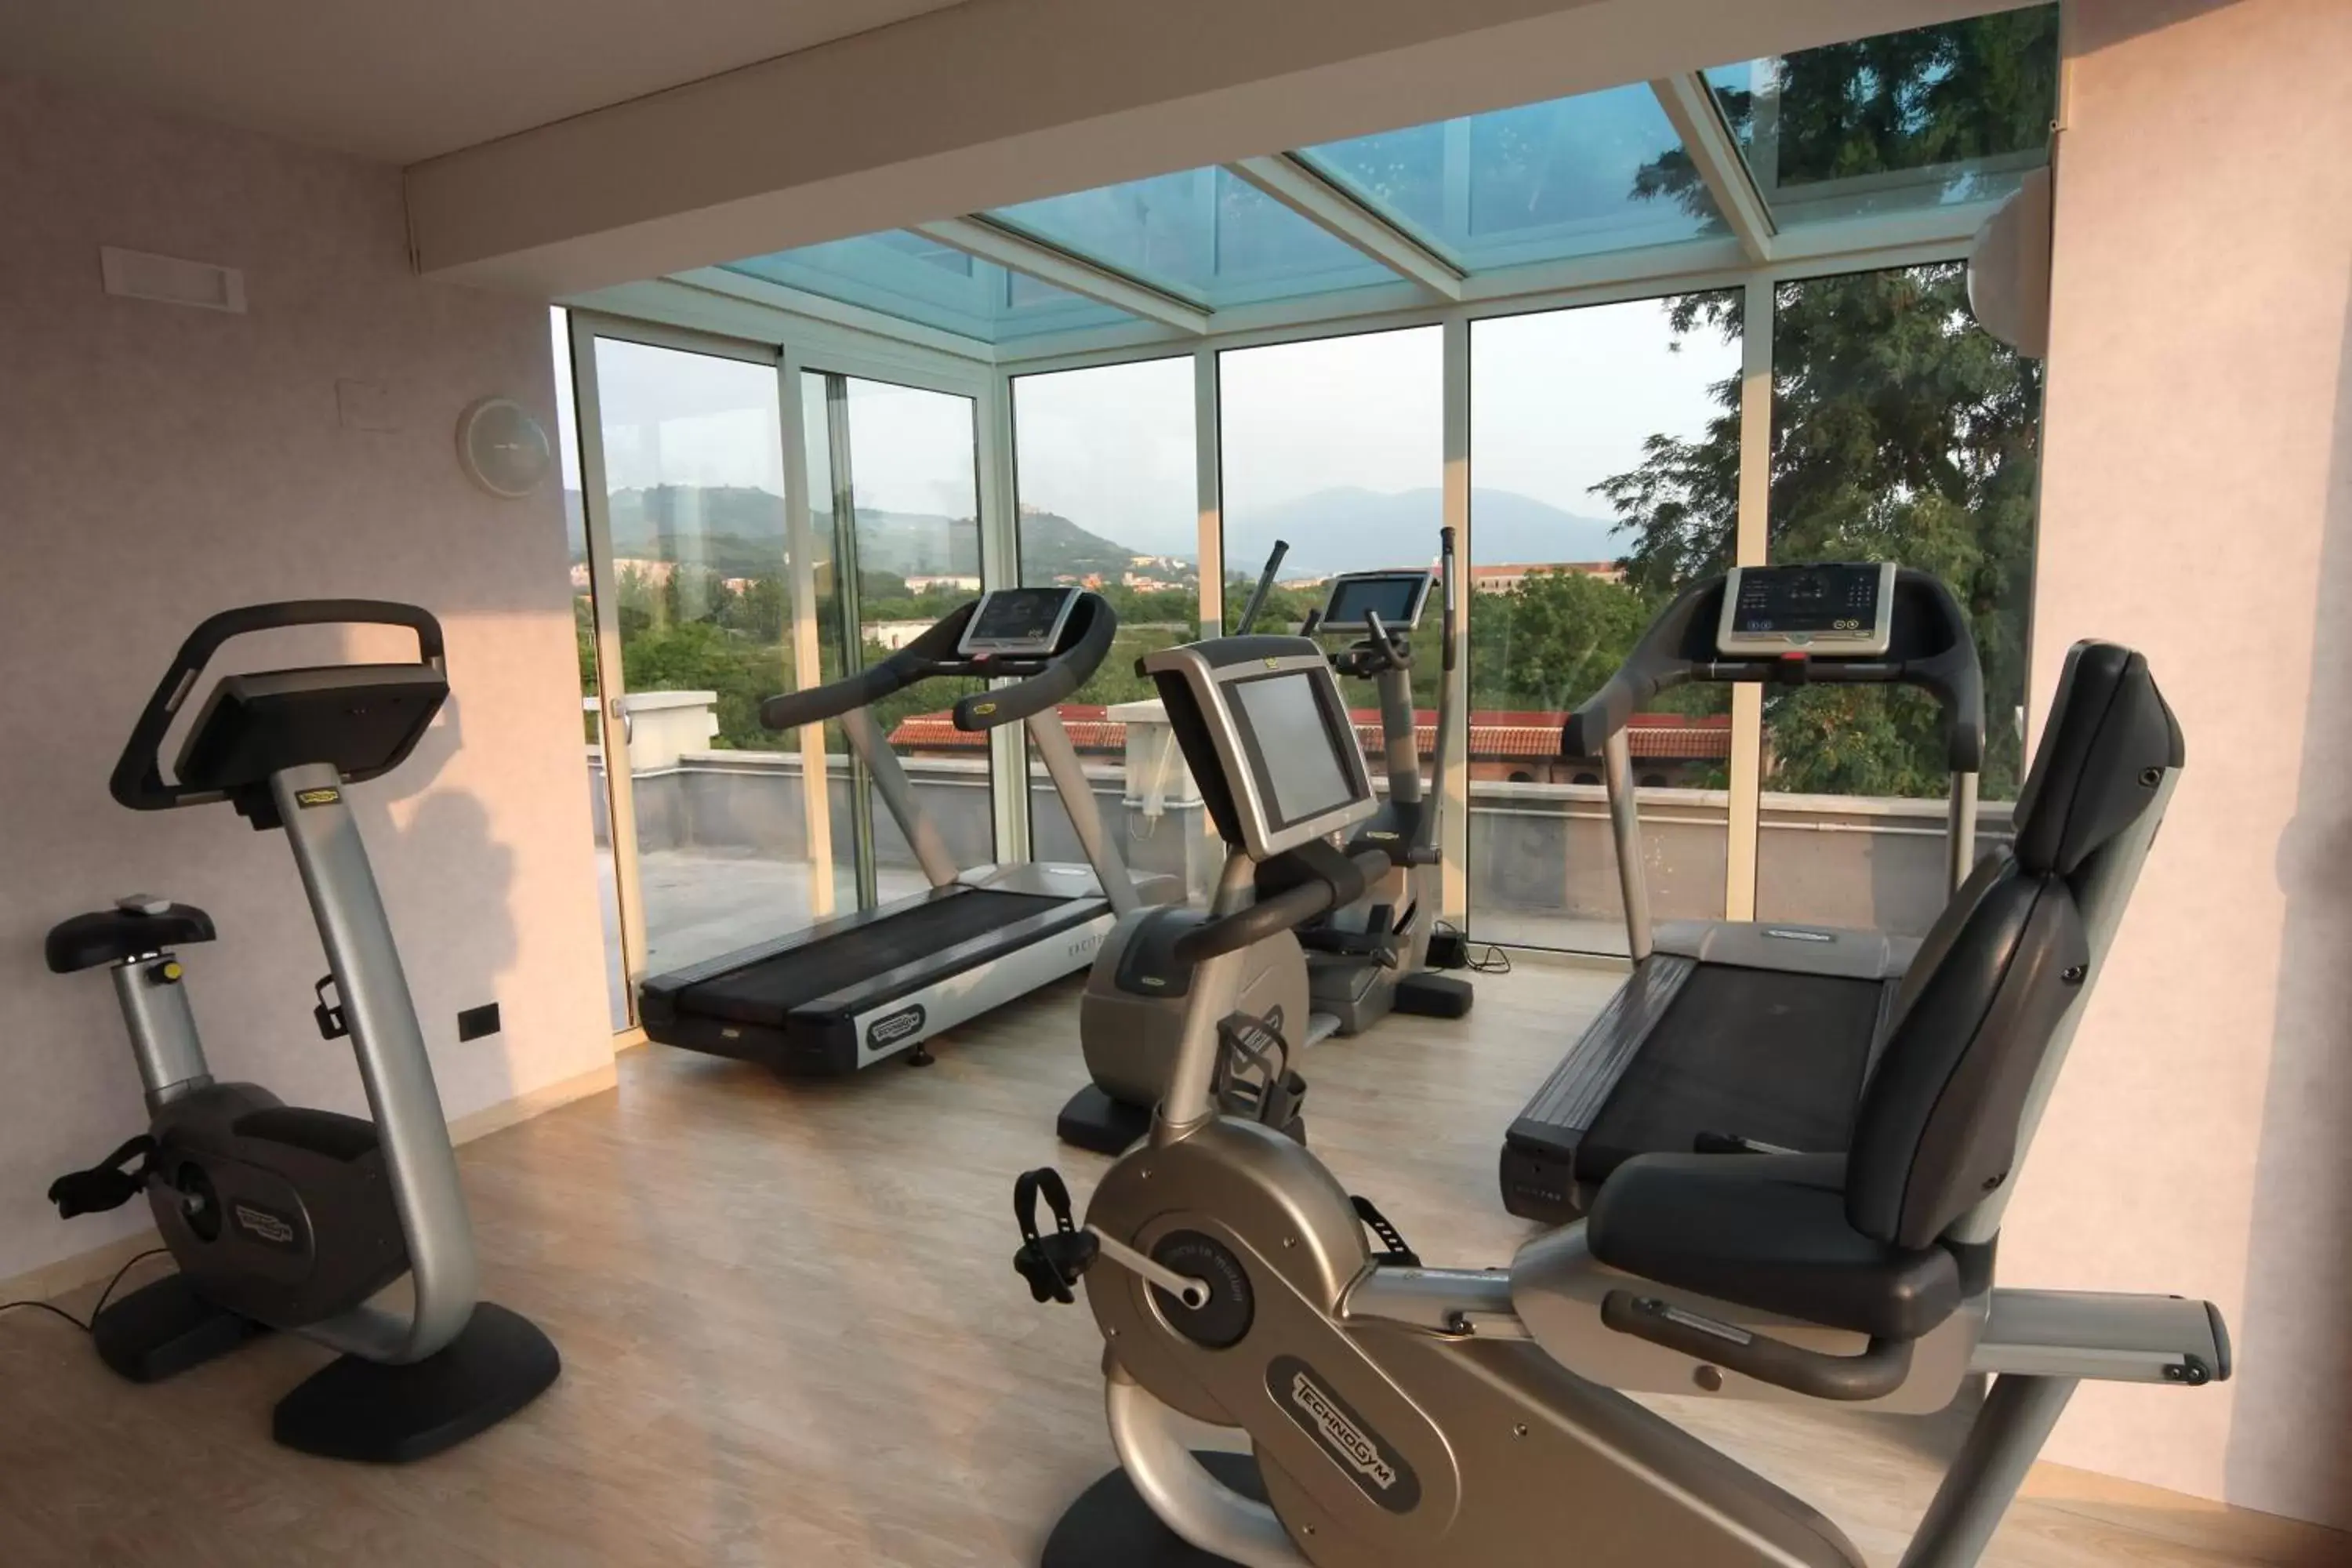 Fitness centre/facilities, Fitness Center/Facilities in Palazzo Giordano Bruno